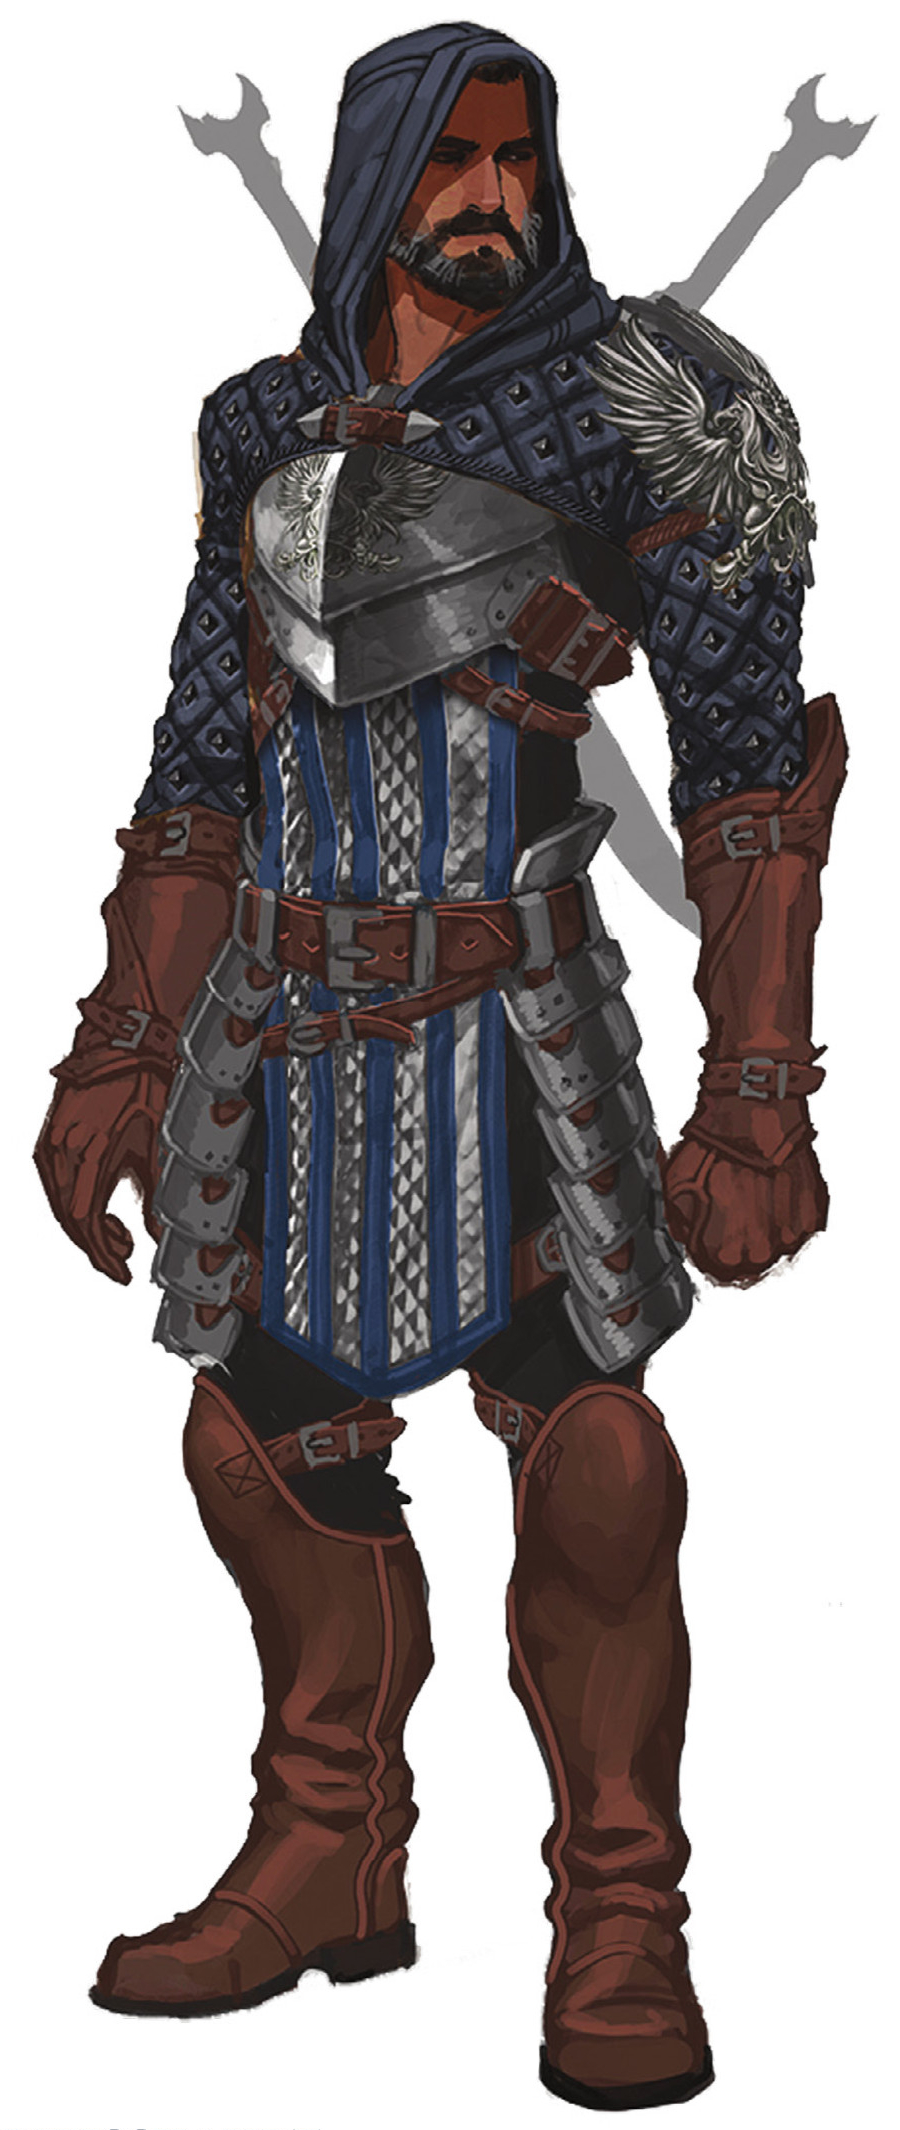 the warden dragon age